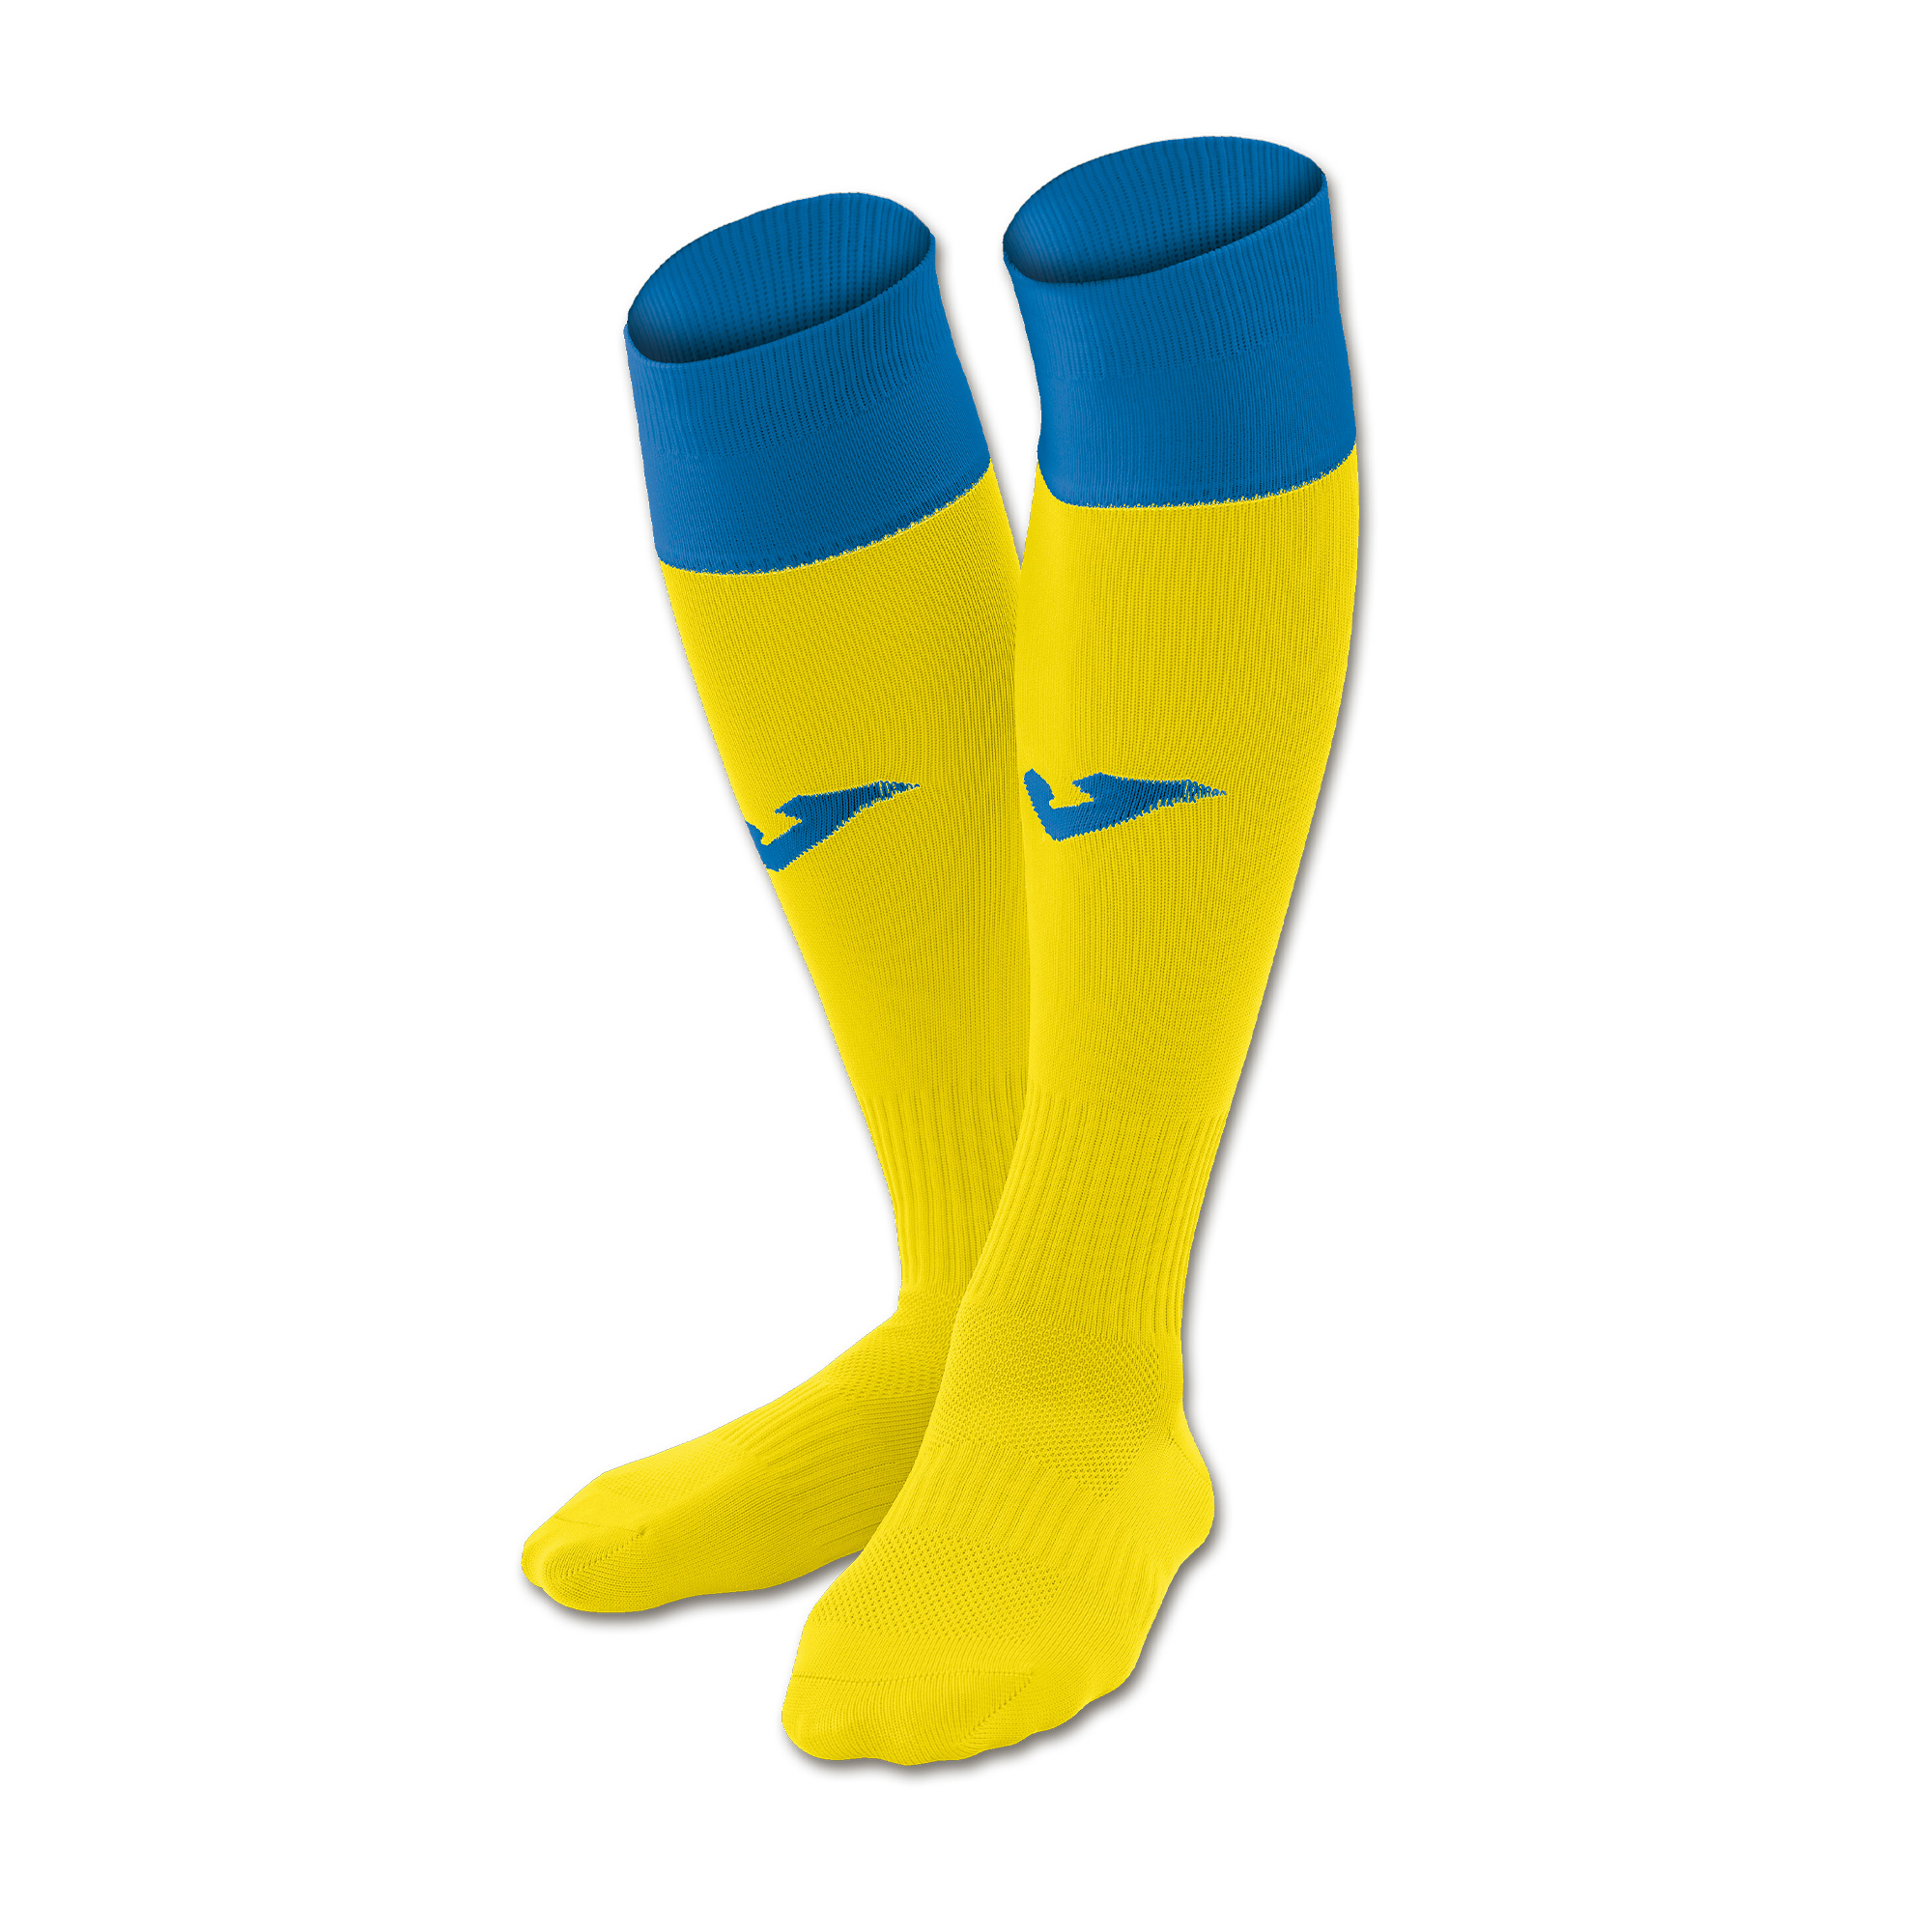 Calcio Socks (400022.900)